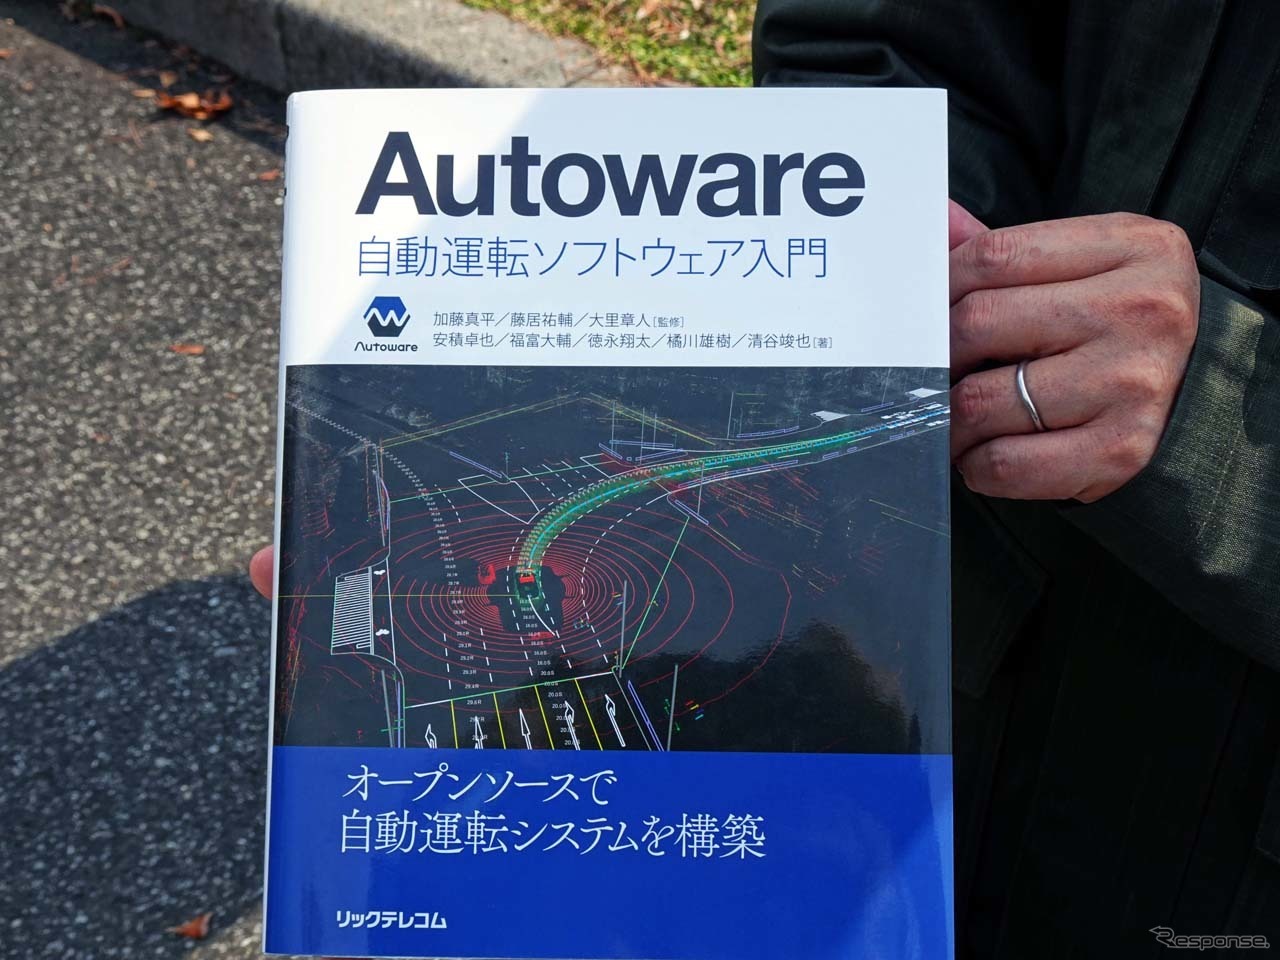 自動運転を手軽に実行するソフトとして普及している「Autoware」の入門書。今年2月に発売されたばかりだ